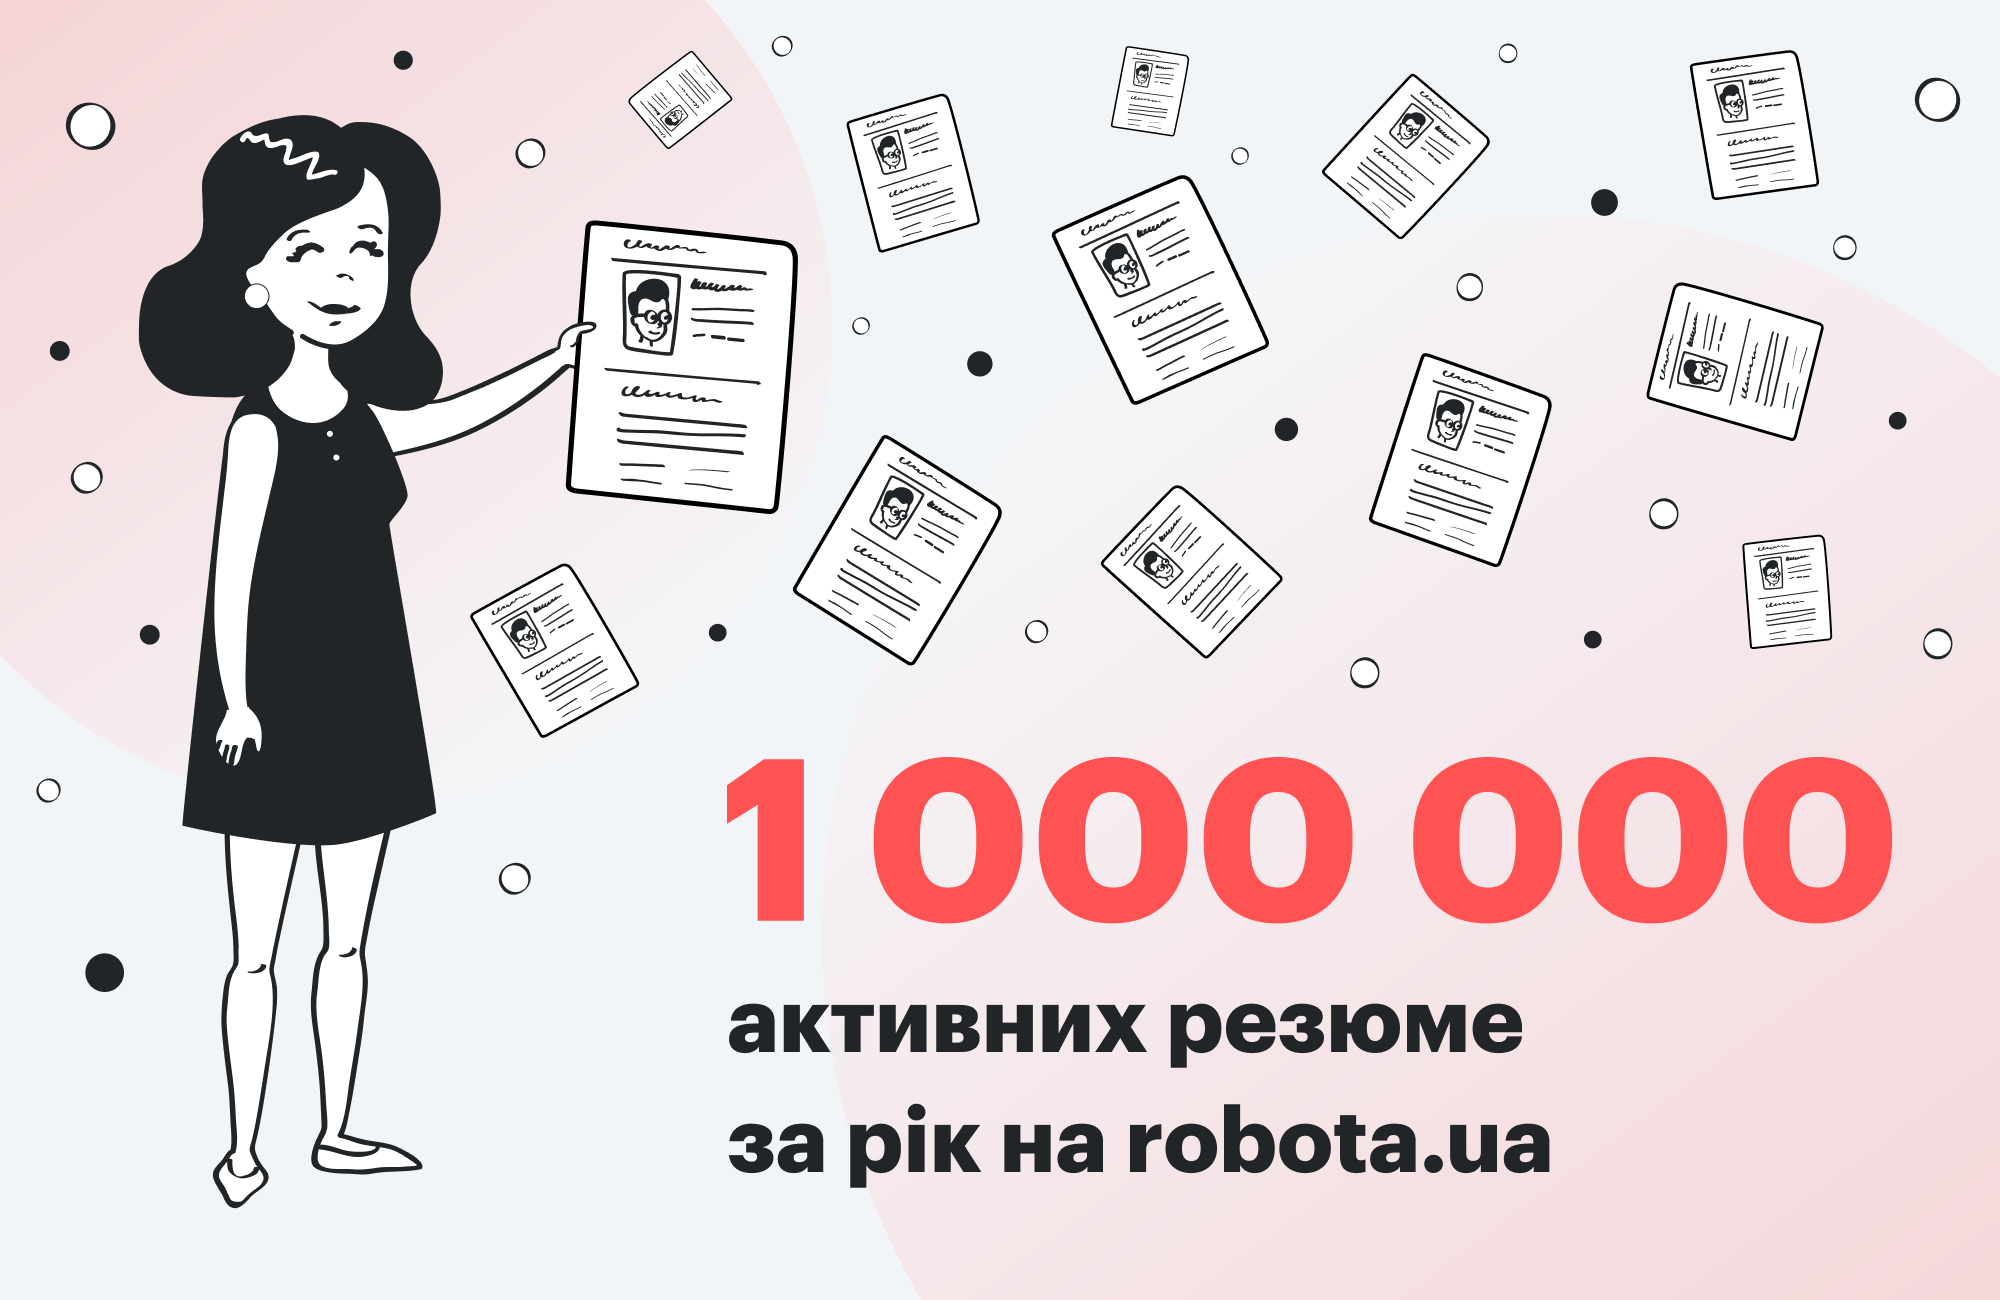 Мільйон активних резюме та інші гарні новини від robota.ua